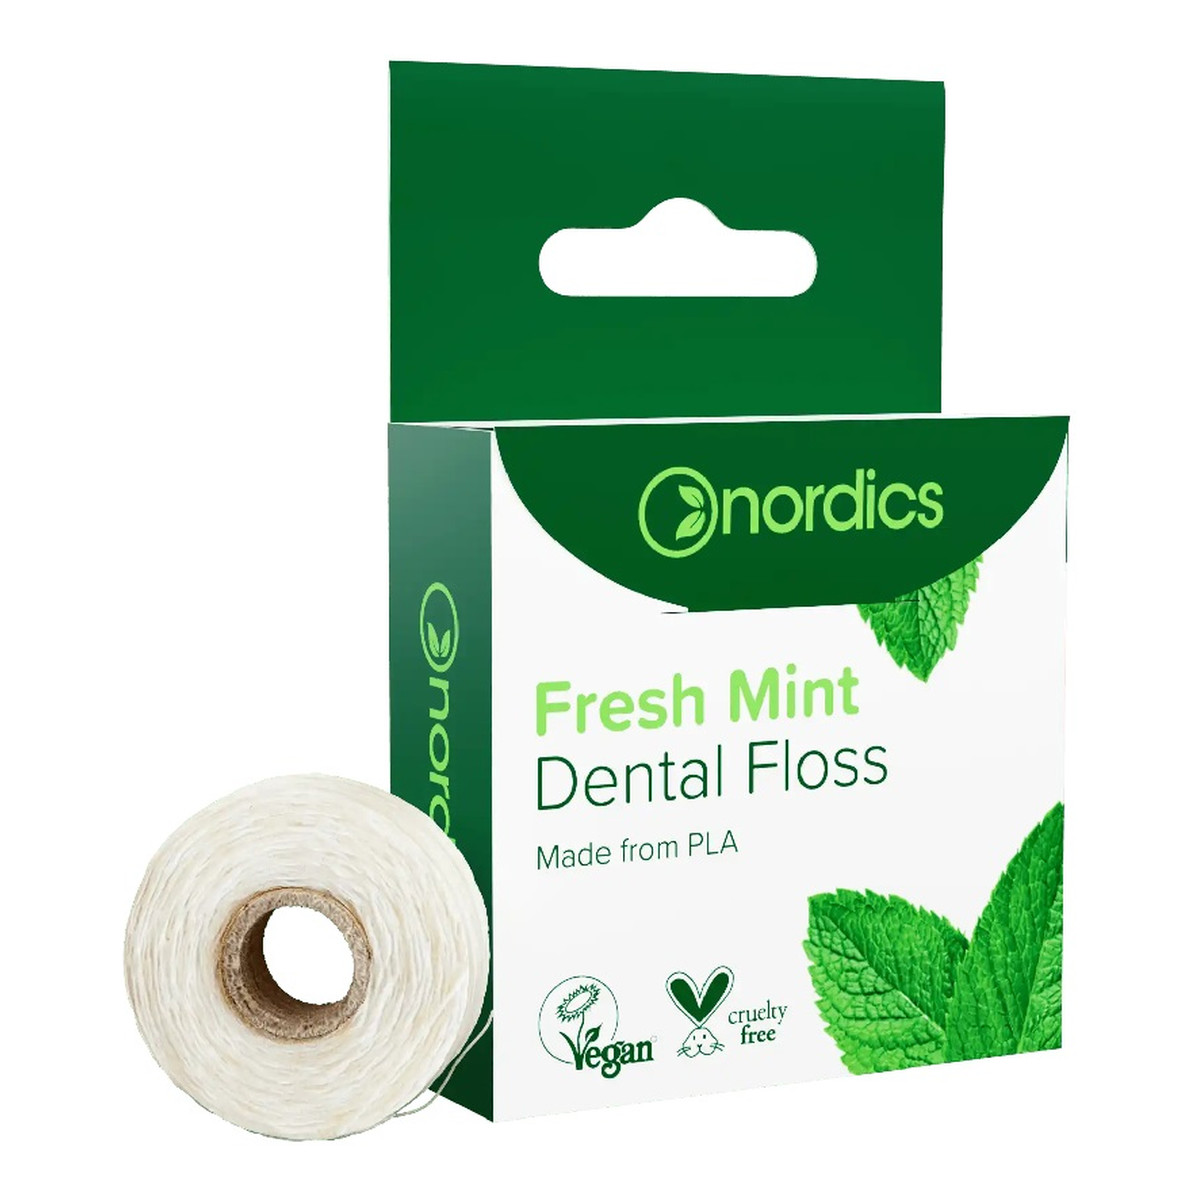 Nordics Dental floss nić dentystyczna ze skrobi kukurydzianej świeży mentol 50m